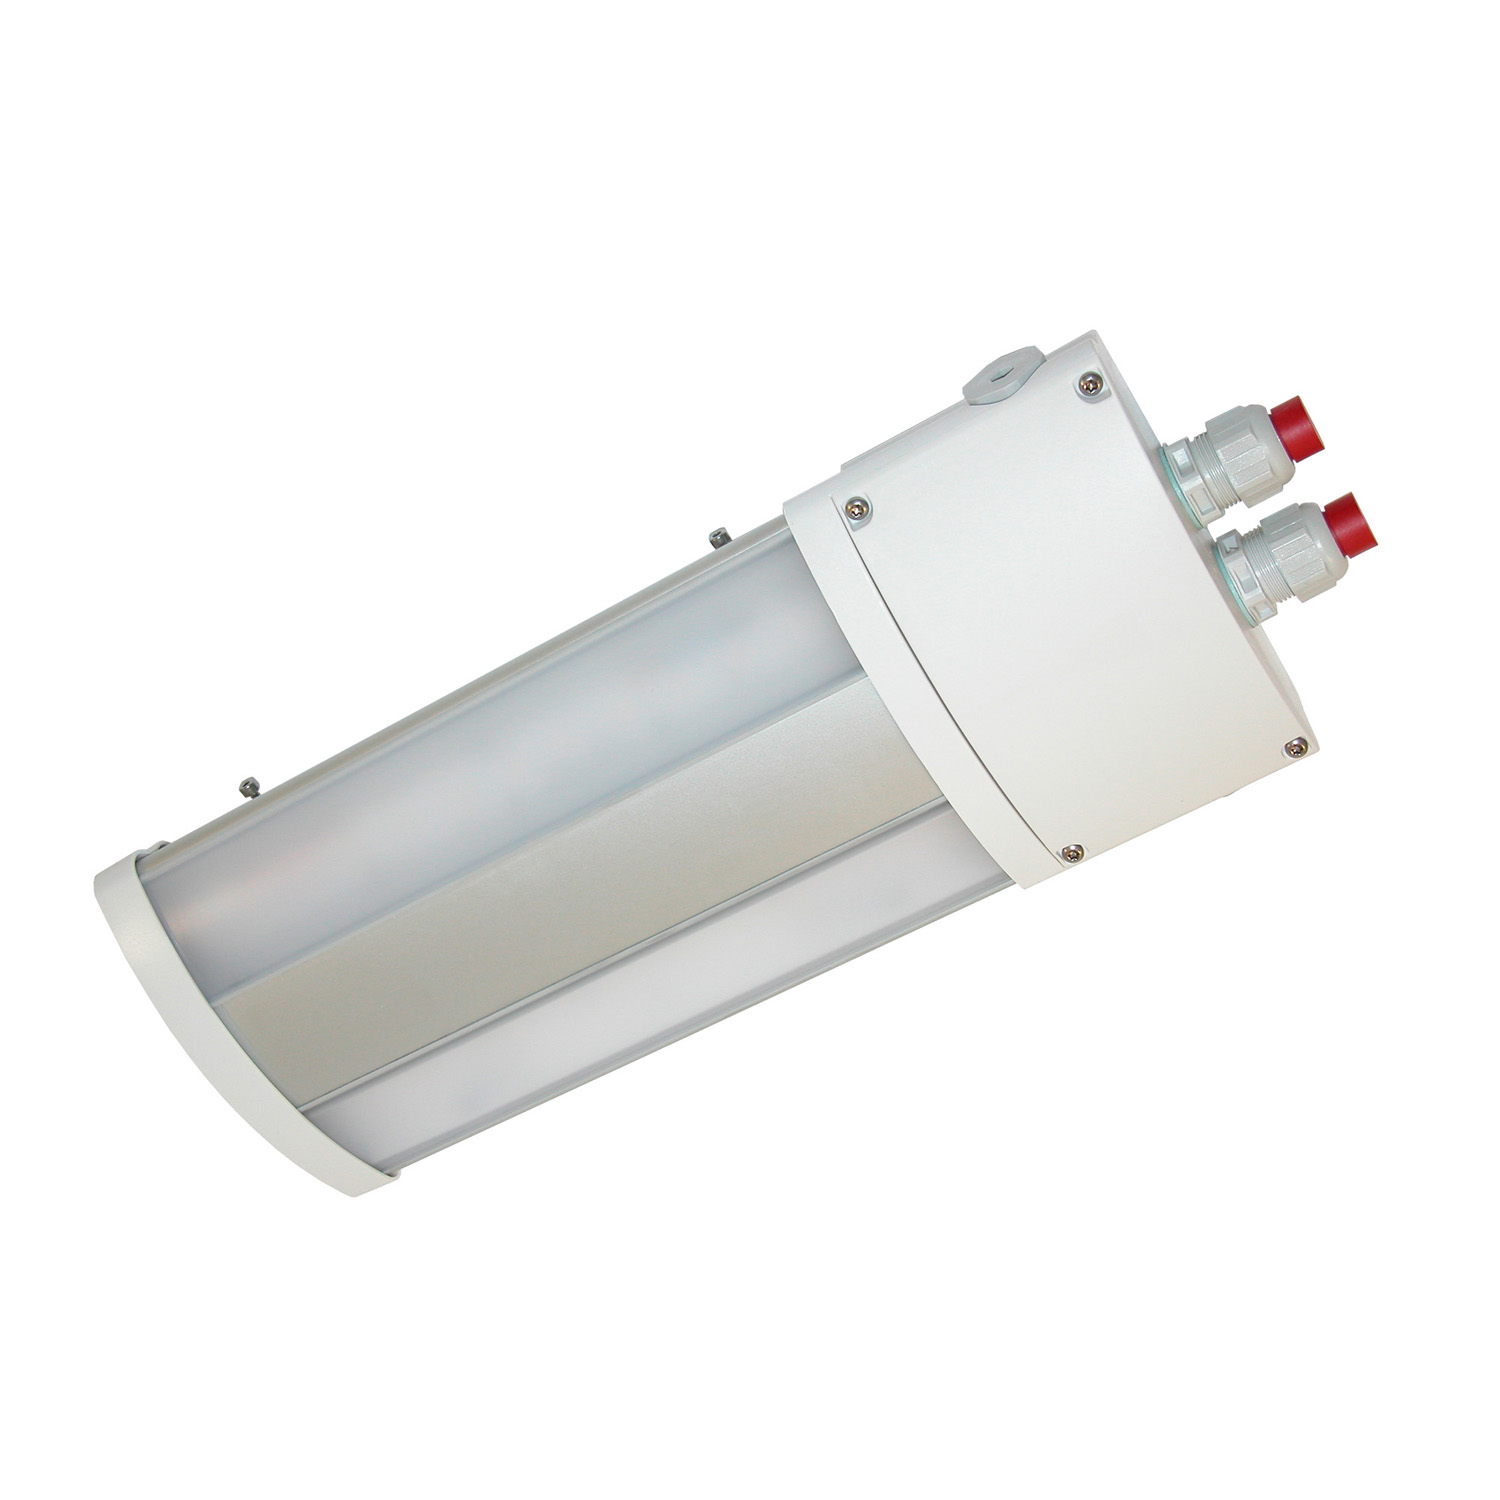 TL50074400 Watertight LED luminaire multipurpose, TL50 800 840 24 M25 AS, 2X5W LED Short version, 24VDC